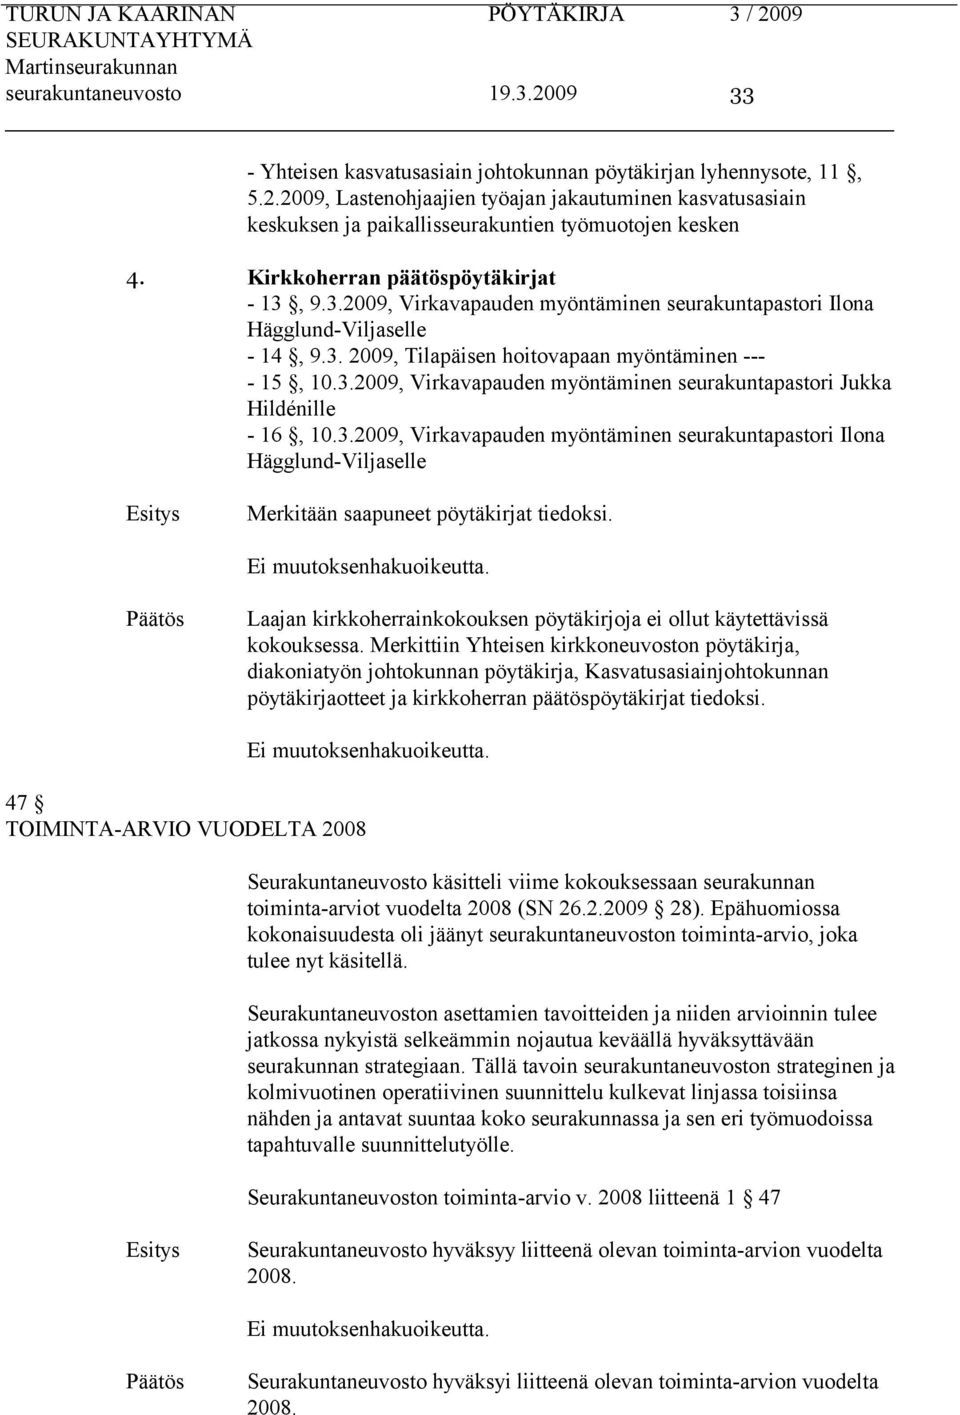 3.2009, Virkavapauden myöntäminen seurakuntapastori Ilona Hägglund-Viljaselle Merkitään saapuneet pöytäkirjat tiedoksi. Laajan kirkkoherrainkokouksen pöytäkirjoja ei ollut käytettävissä kokouksessa.